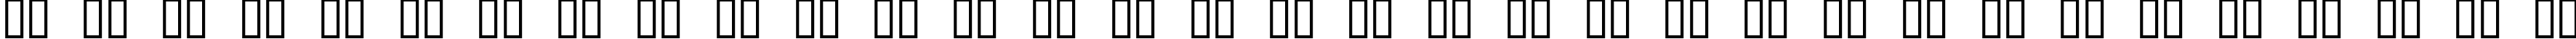 Пример написания русского алфавита шрифтом Oxygene 1